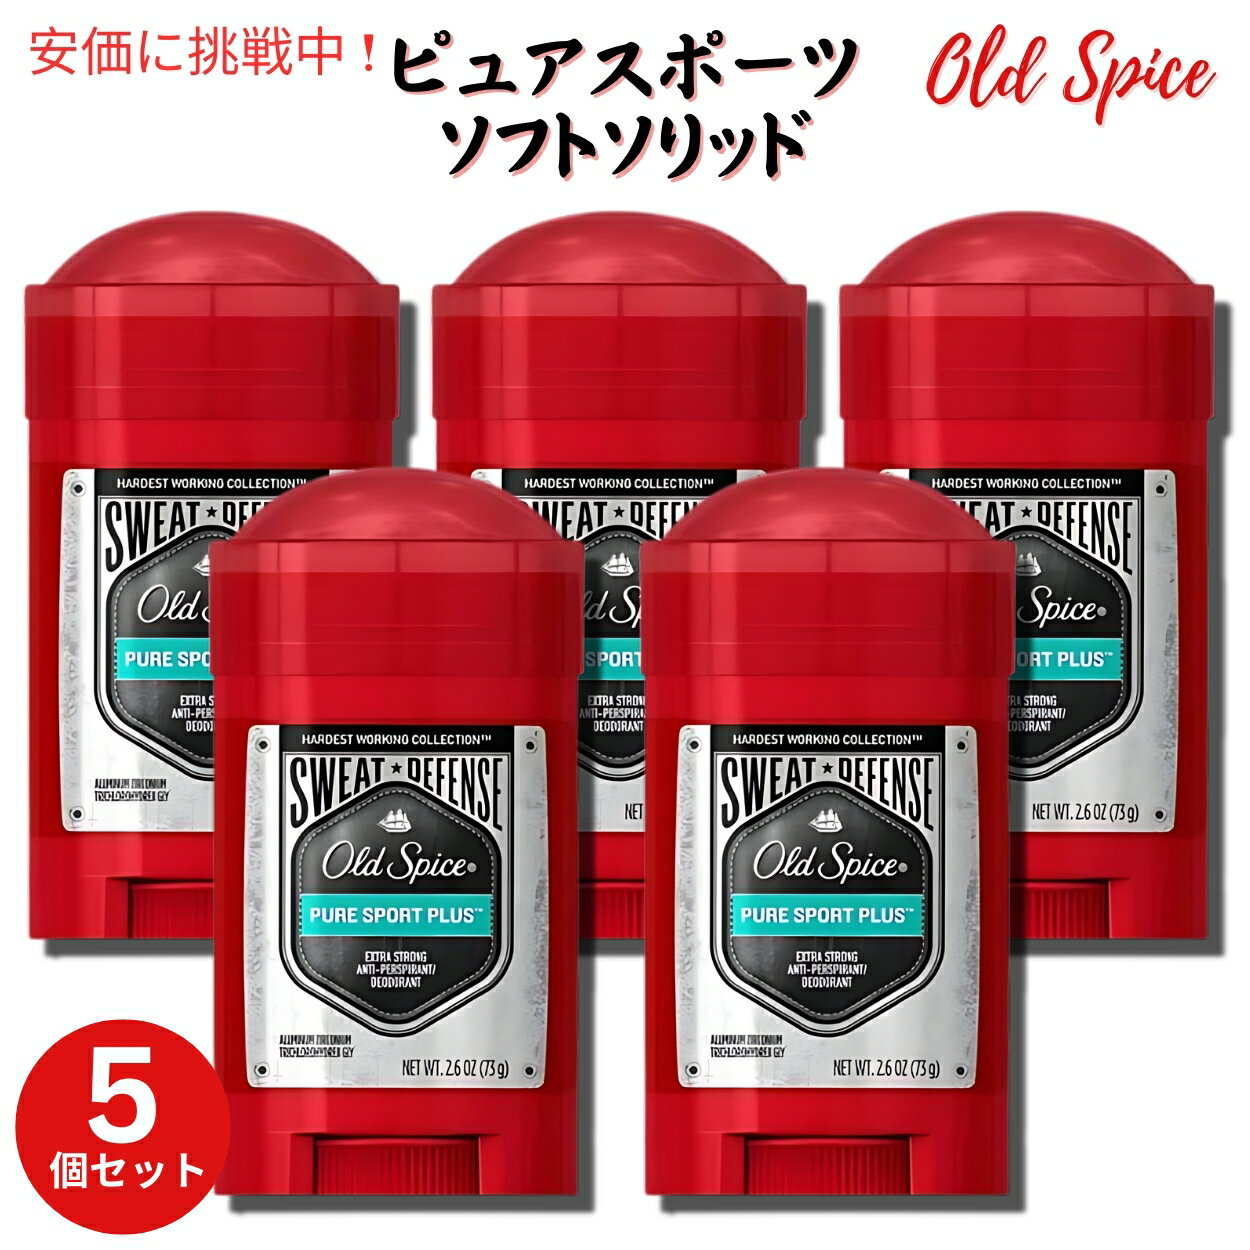 【5個セット】Old Spice オールドスパイス デオドラント 73g [ピュアスポーツ] ソフトソリッド スウェットディフェンス Sweat Defense Pure Sport 2.6oz